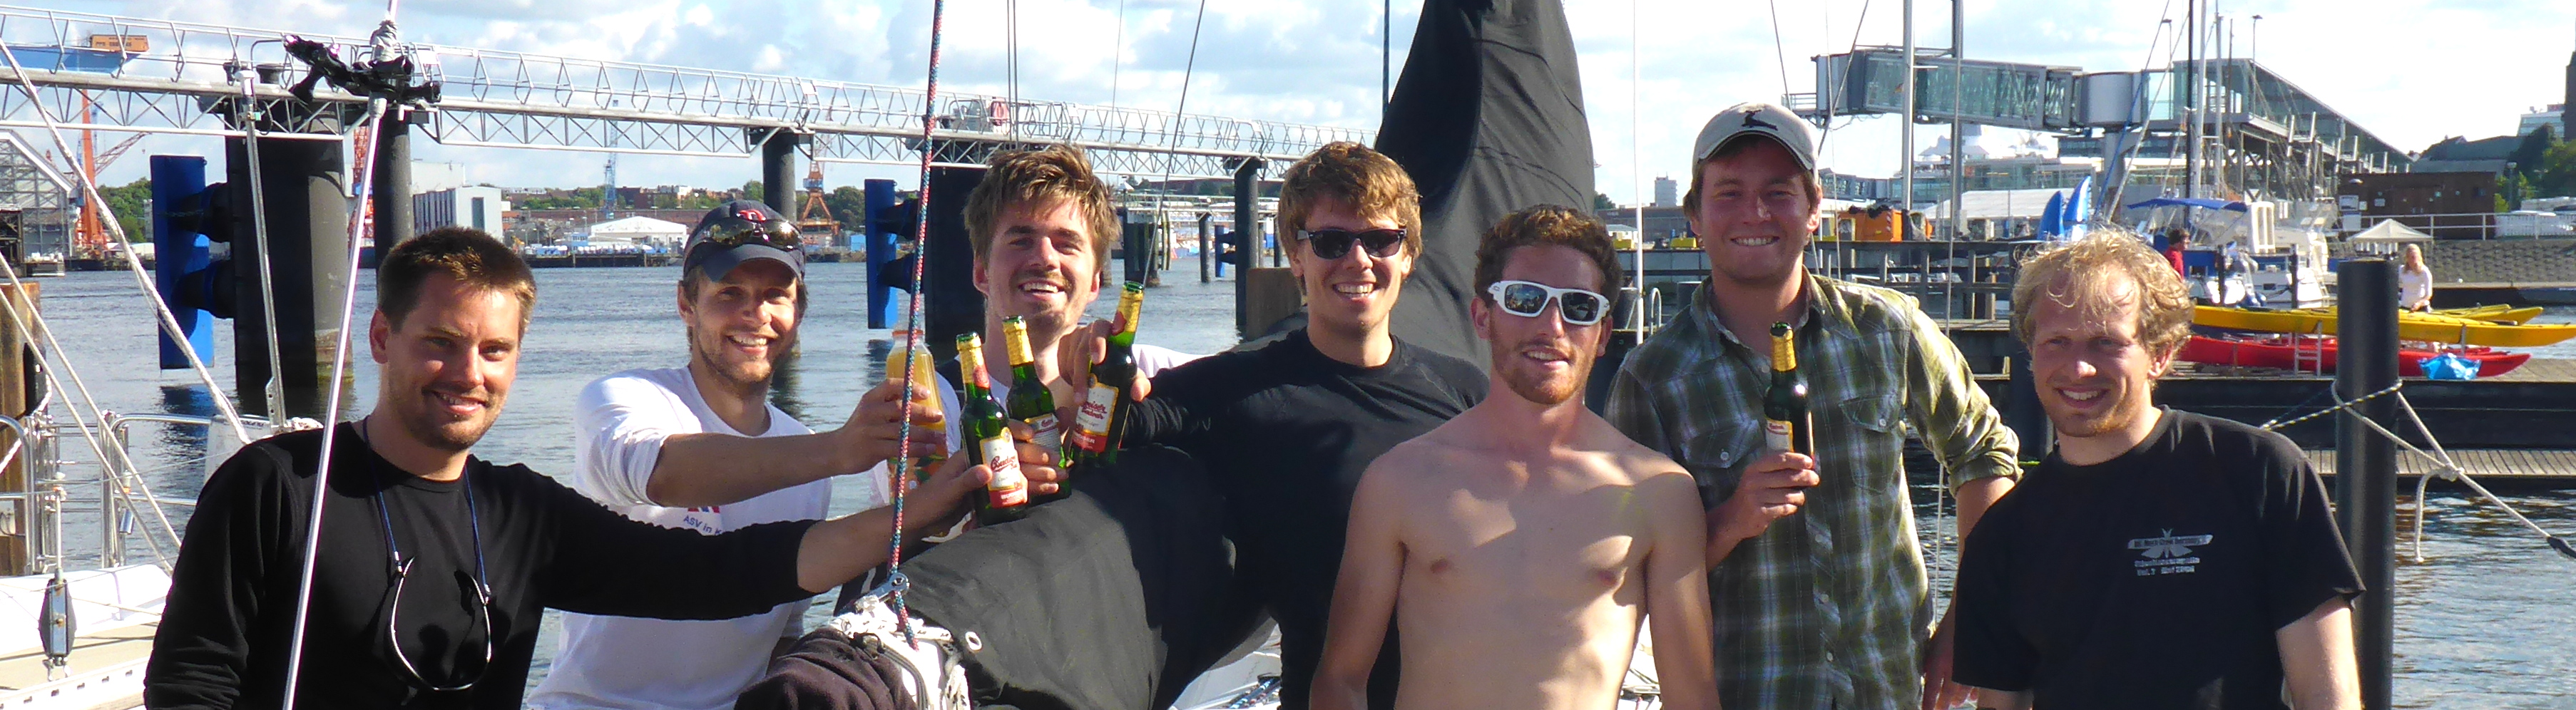 Mit einem kühlen Bier im Hafen begrüßt: Kay, Martin, Nils, Kai, Nico, Jens und Sören